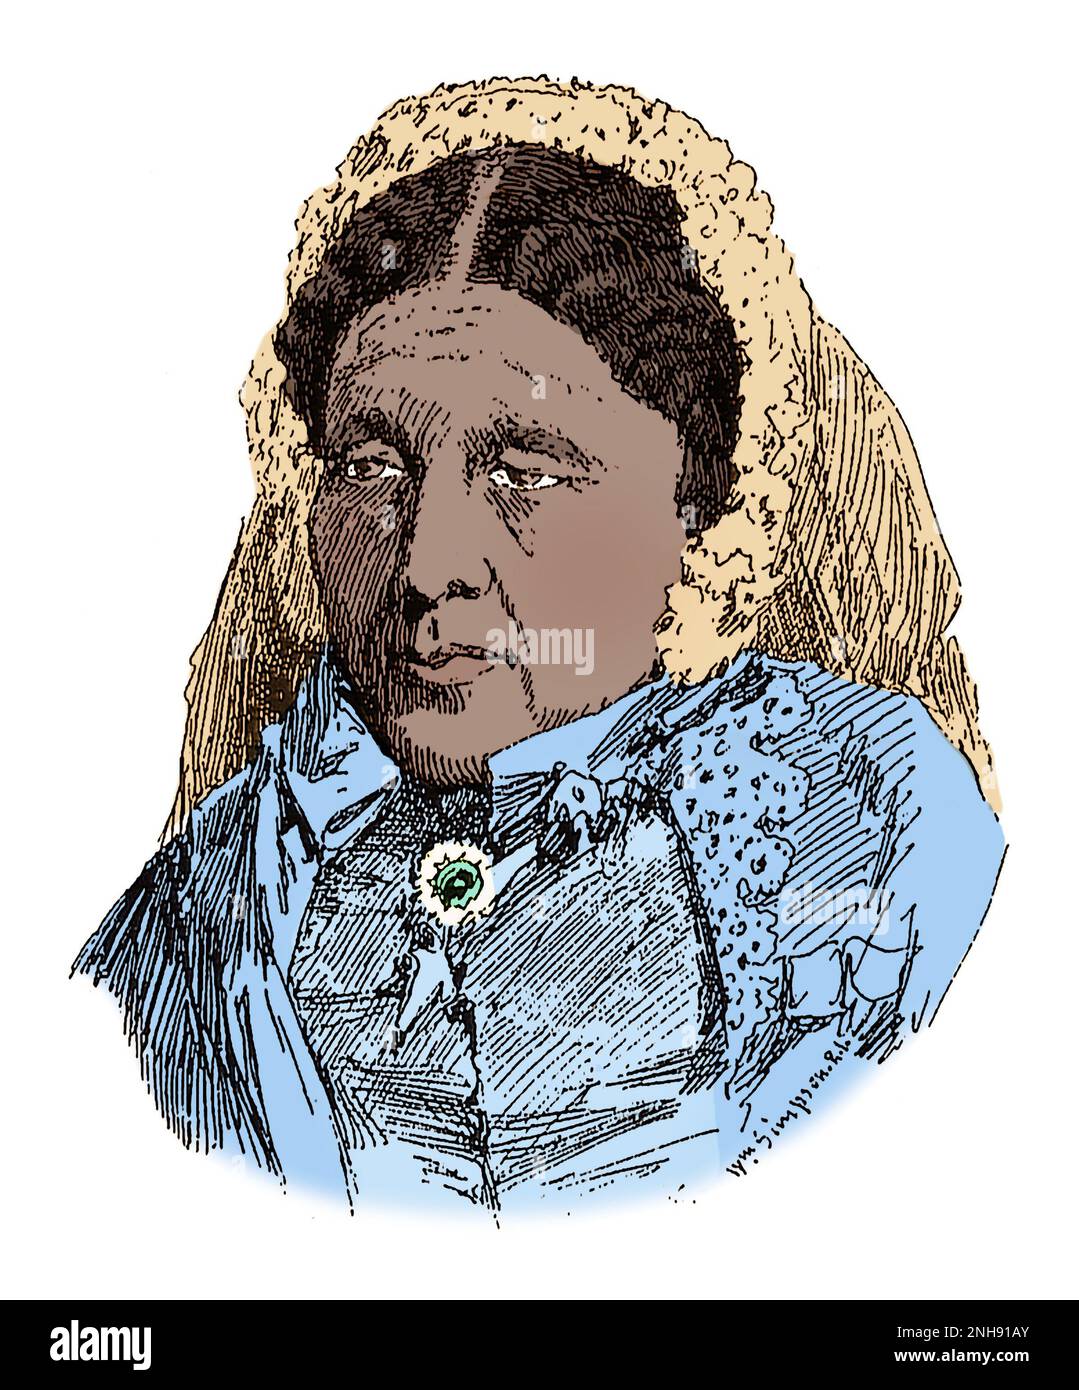 Croquis de Mary Seacole par l'artiste de guerre de Crimée William Simpson (1823-1899), c. 1855. Mary Seacole (1805-1881) était une femme d'affaires et une infirmière britannique-jamaïcaine. Pendant la guerre de Crimée, elle a couru un hôtel et a eu tendance à faire des blessés. Son autobiographie, Wonderful Adventures of Mrs Seacole in Many Lands (1857), est l'une des premières autobiographies d'une femme de race mixte. En 2004, elle a été élue la plus grande Britannique noire. Colorisé. Banque D'Images